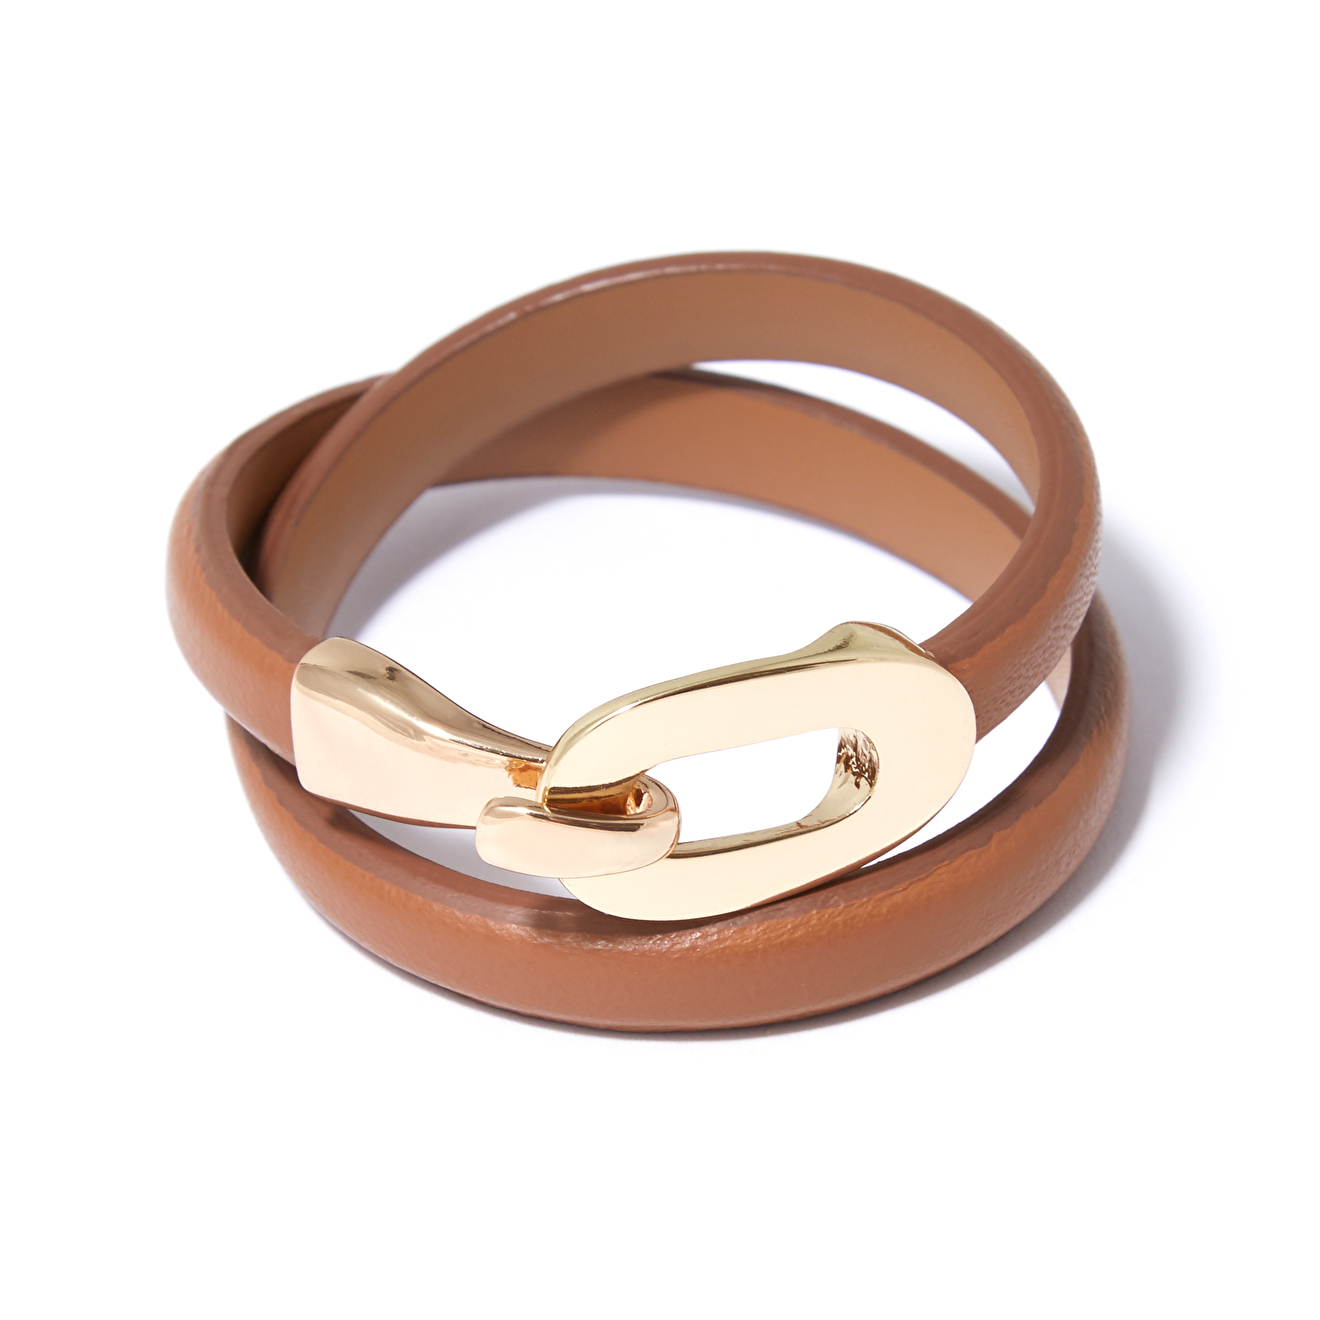 Tannum Коричневый кожаный браслет с пряжкой tannum болотный кожаный браслет с золотистым замком